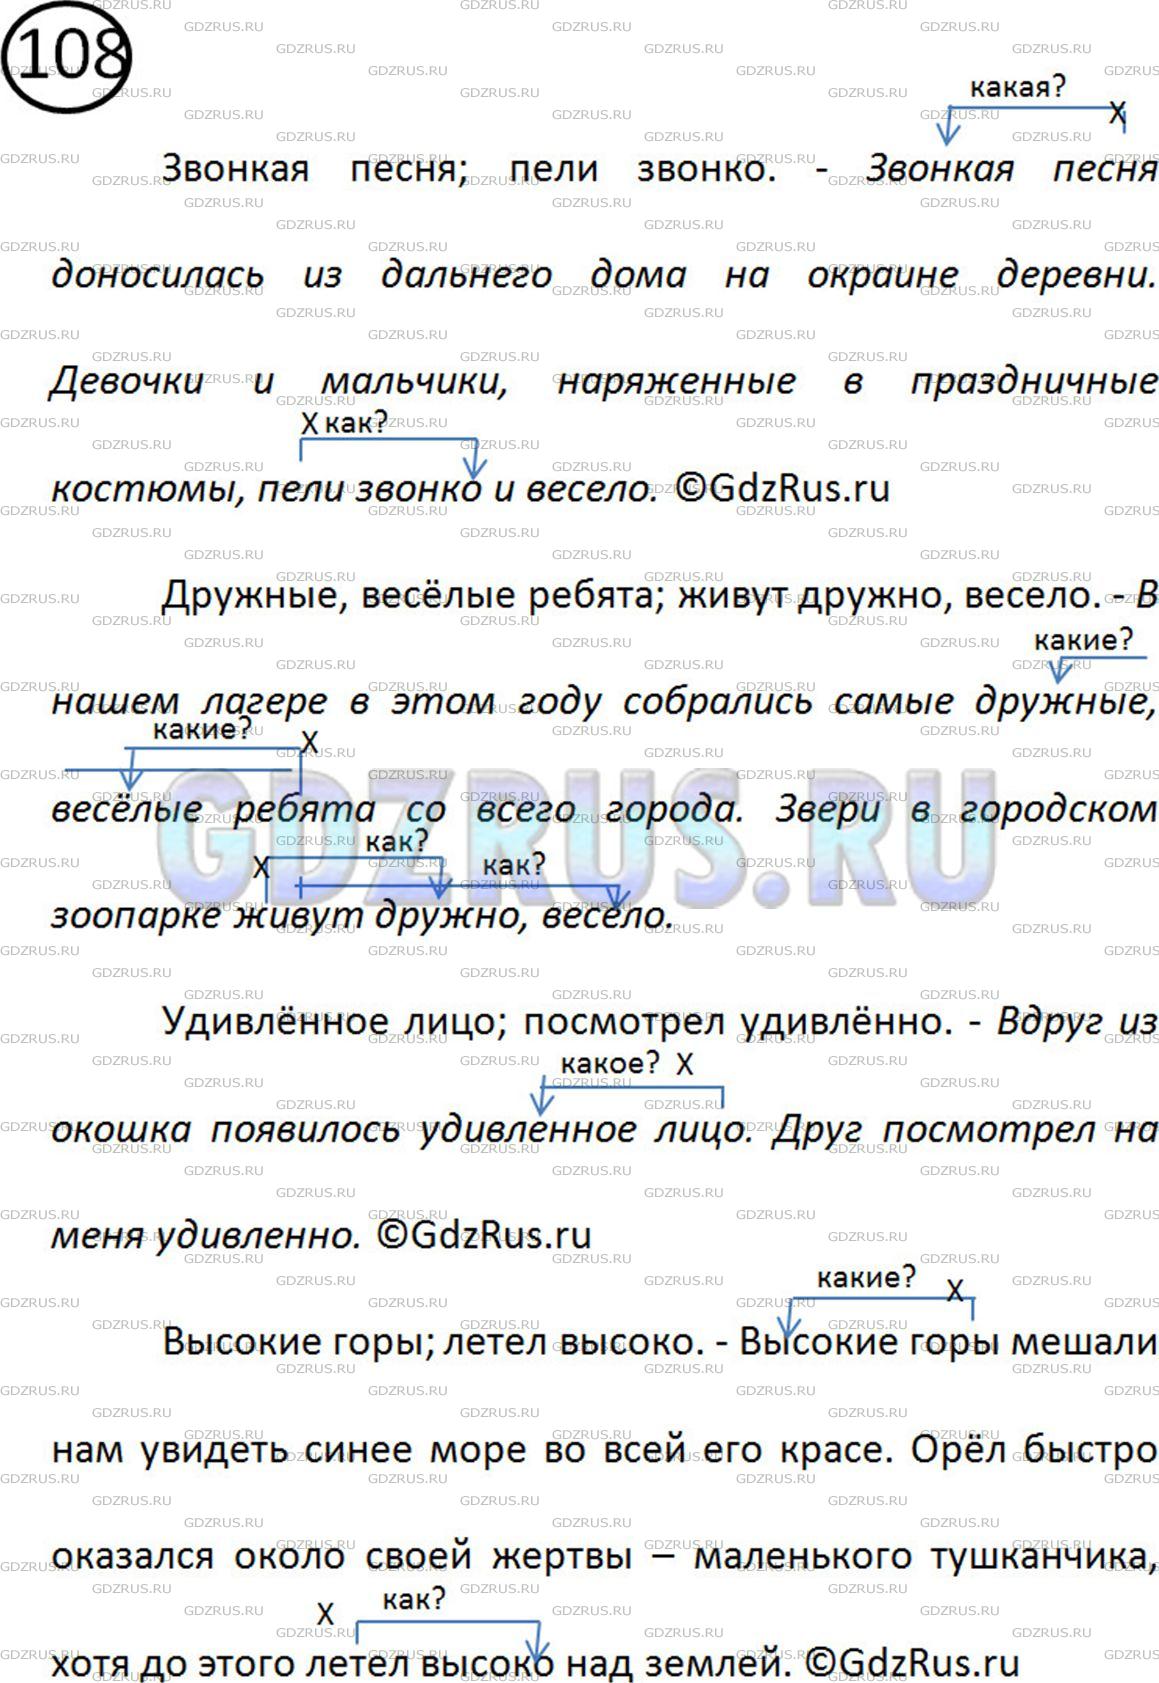 Фото решения 2: Номер №108 из ГДЗ по Русскому языку 5 класс: Ладыженская Т.А. 2012г.